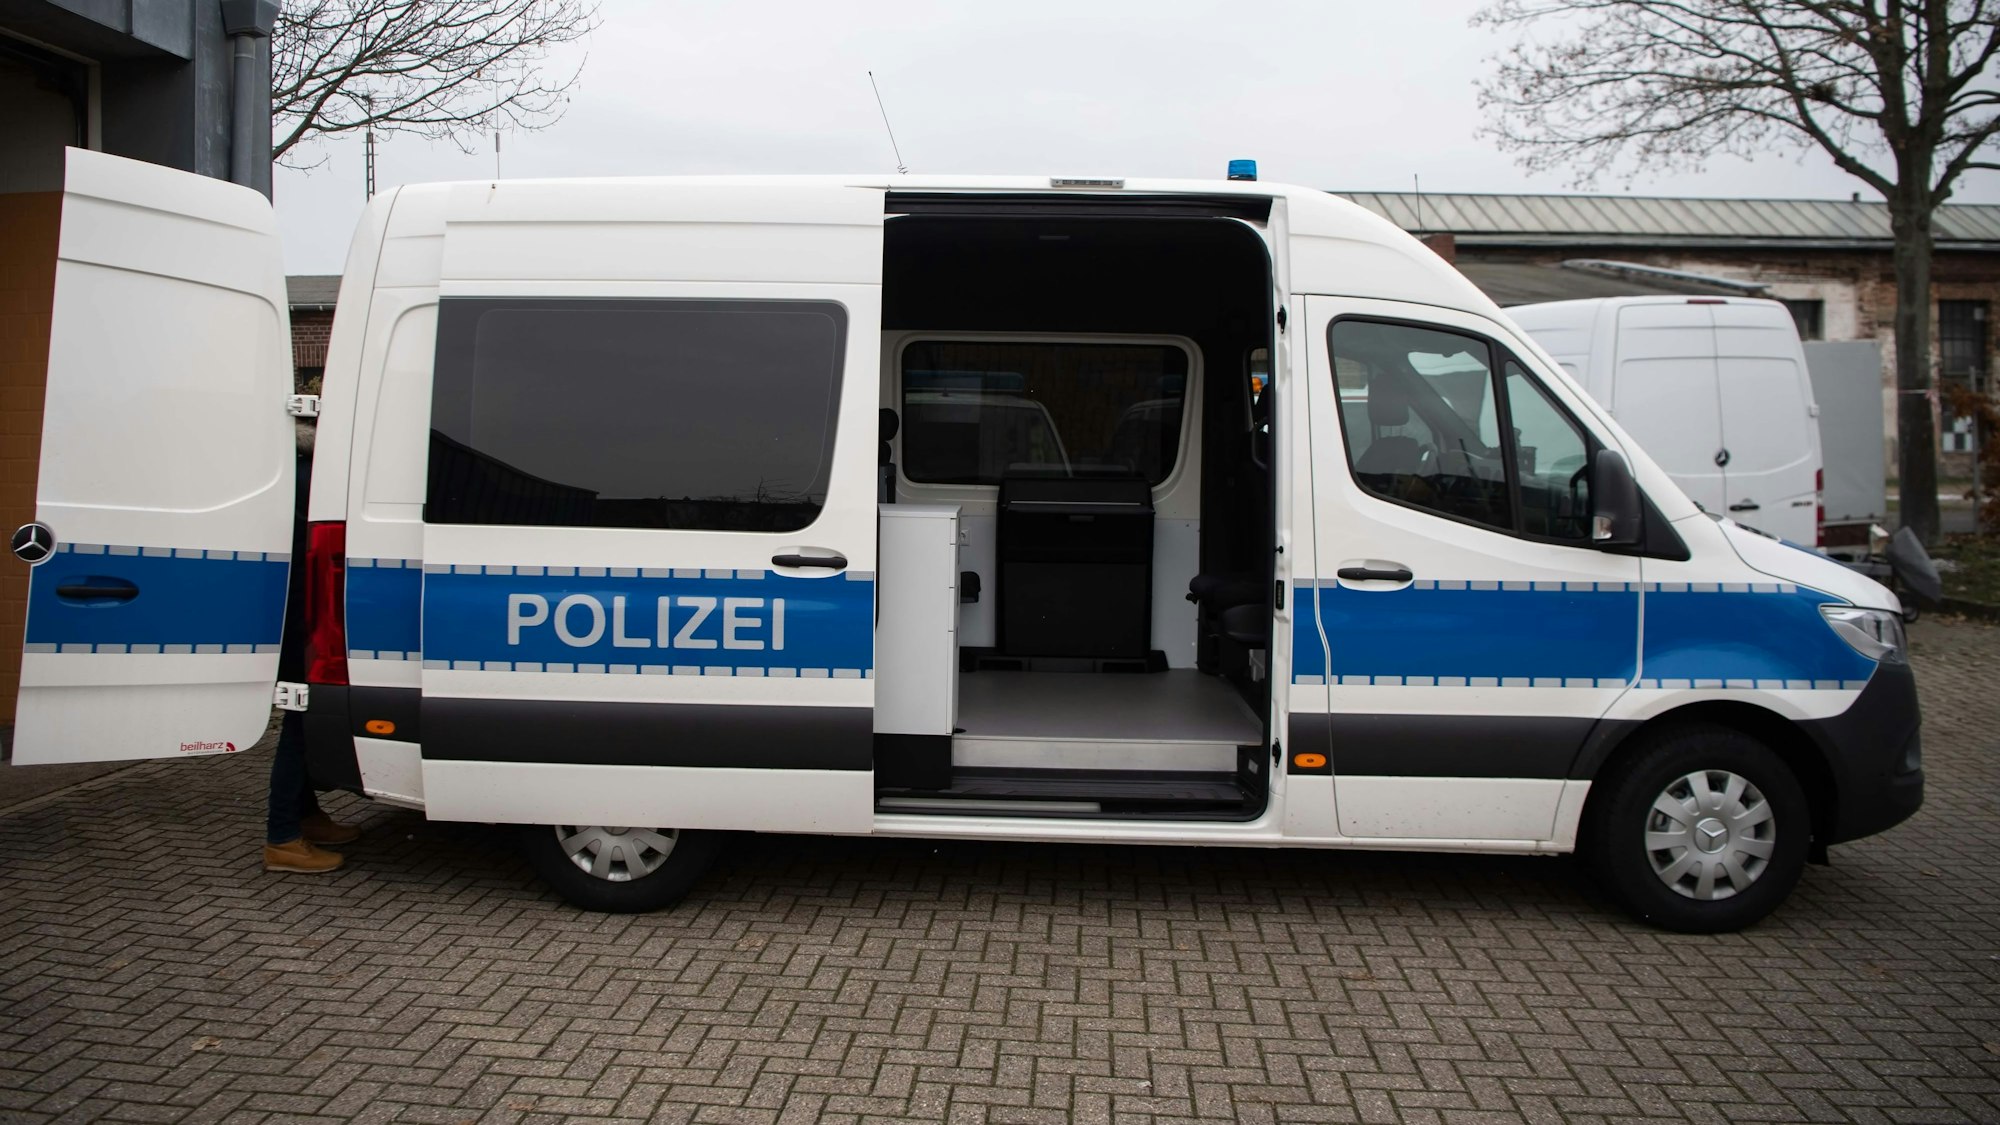 Ein Polizei-Fahrzeug vom Typ Mercedes Sprinter steht mit geöffneter Schiebetür auf einem Parkplatz.